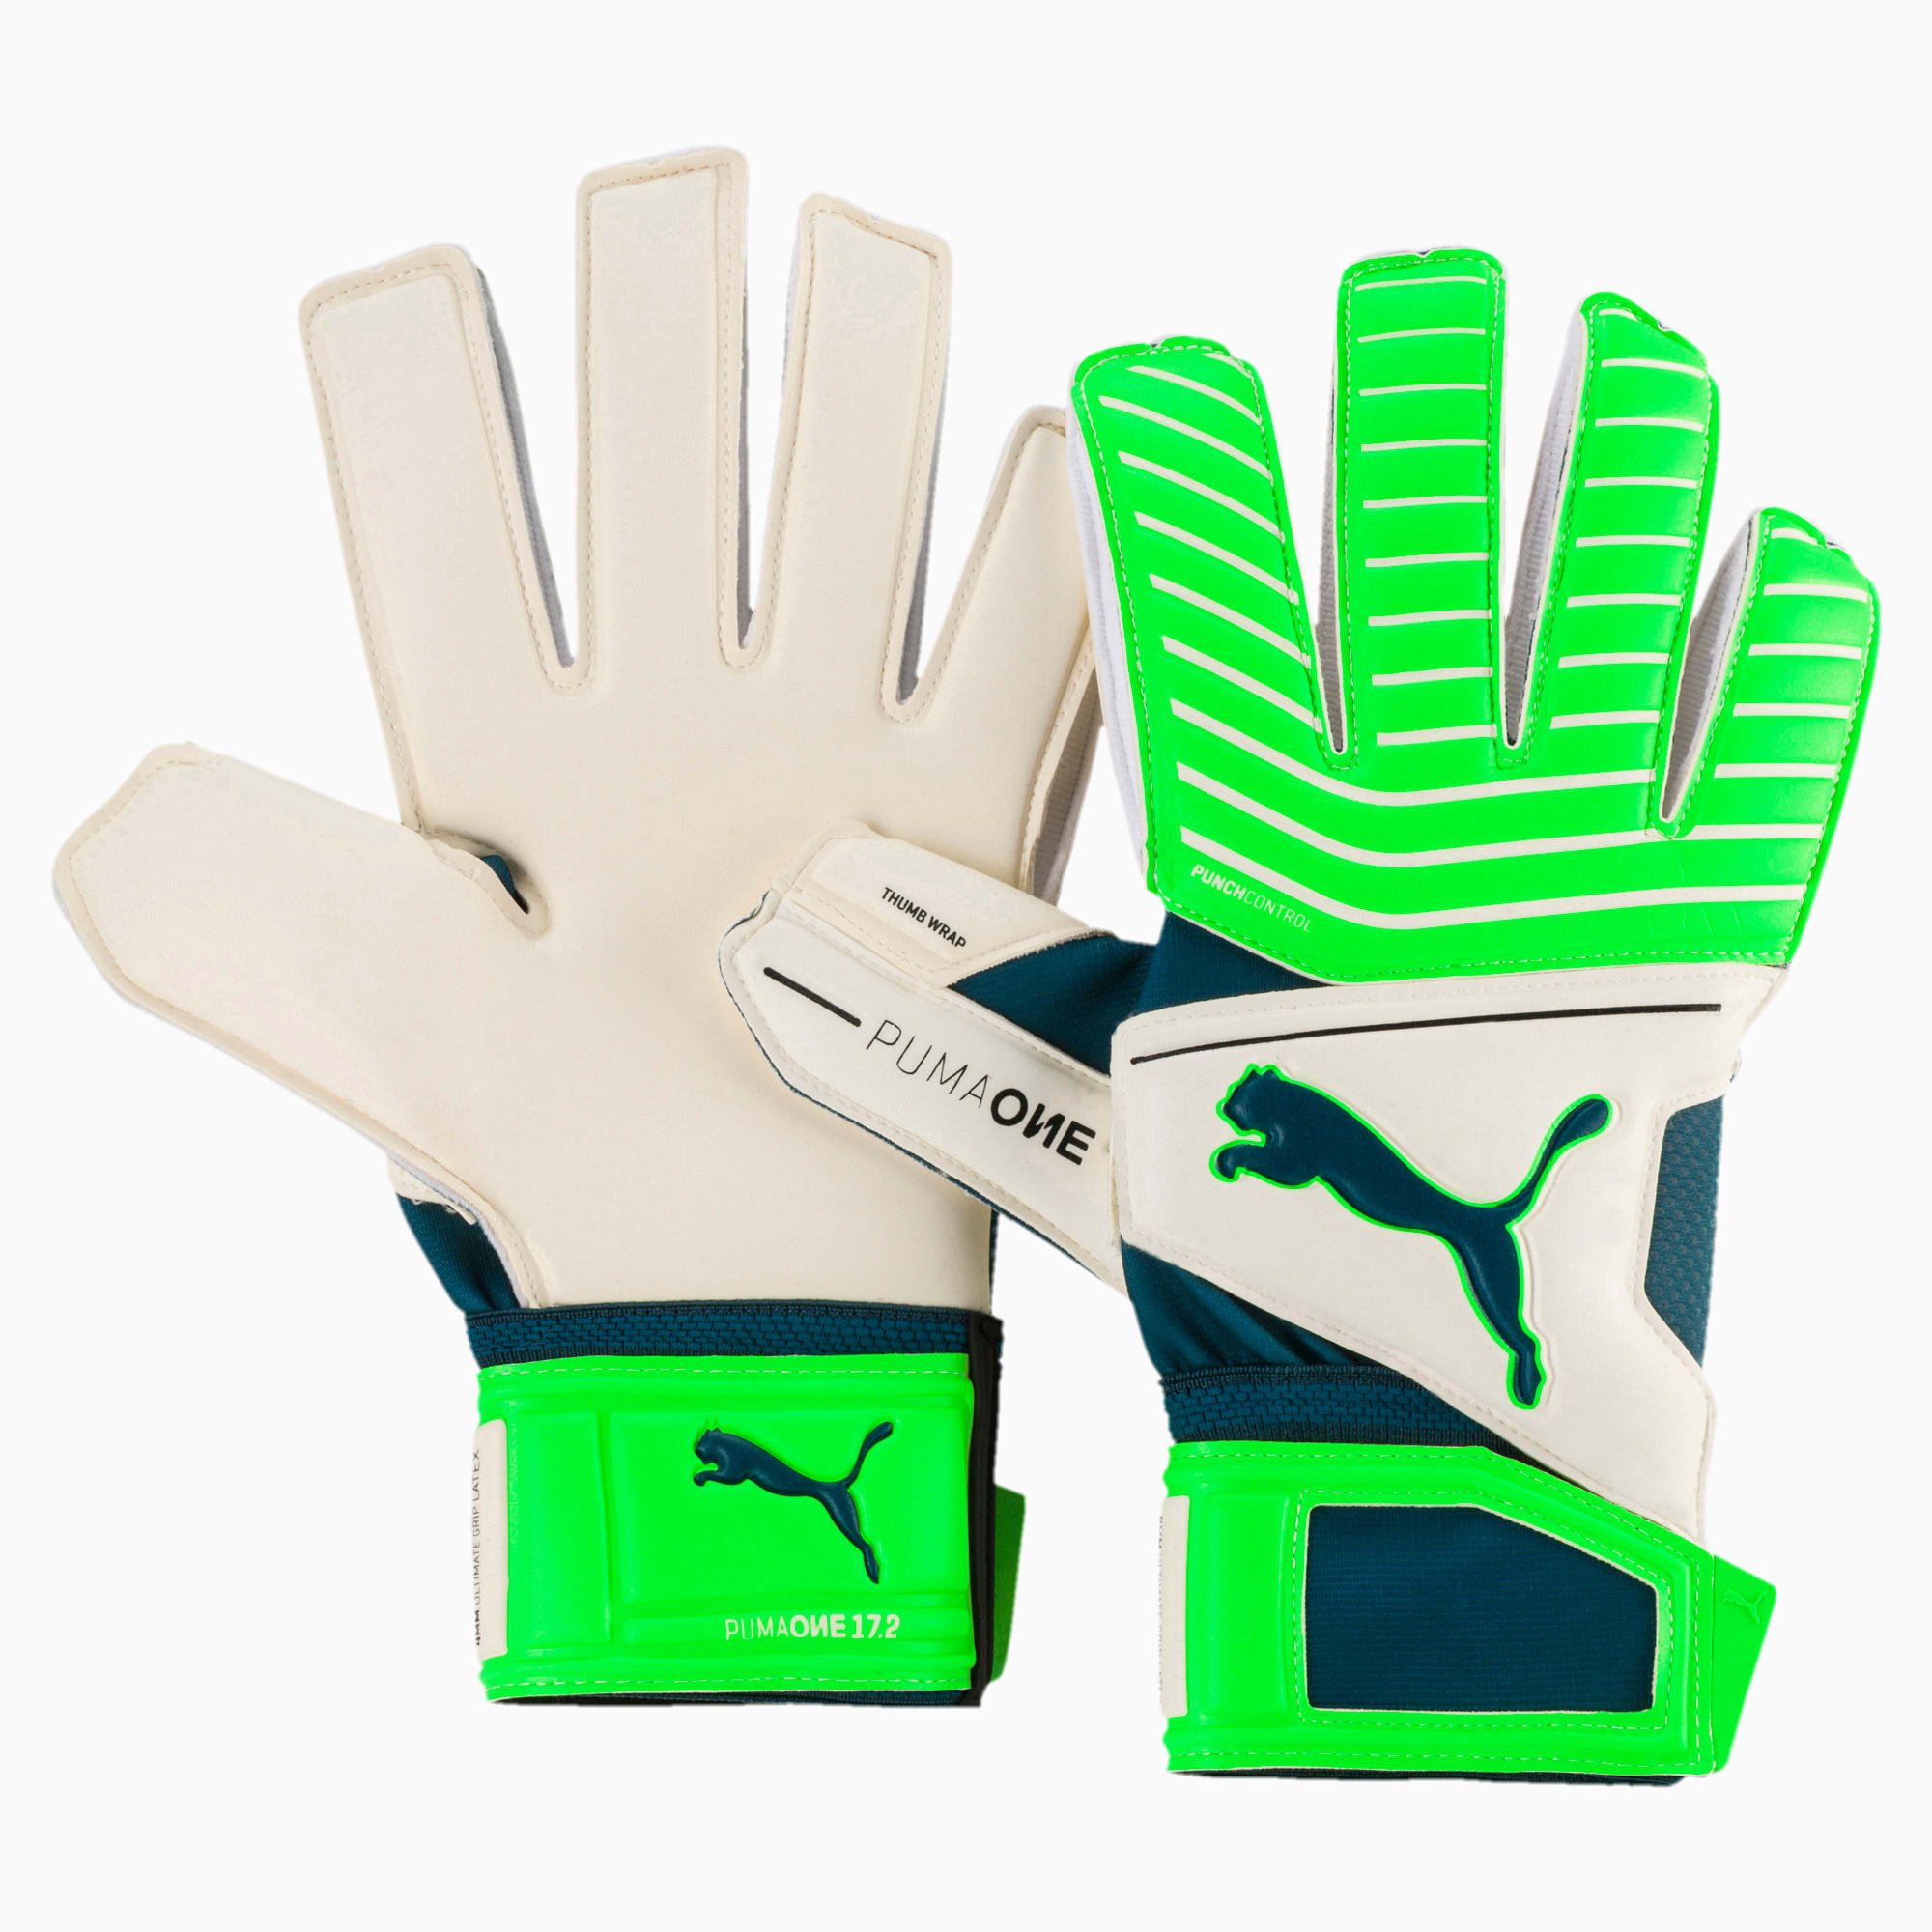 PUMA ONE Grip 17.2 Goalkeeper Gloves 